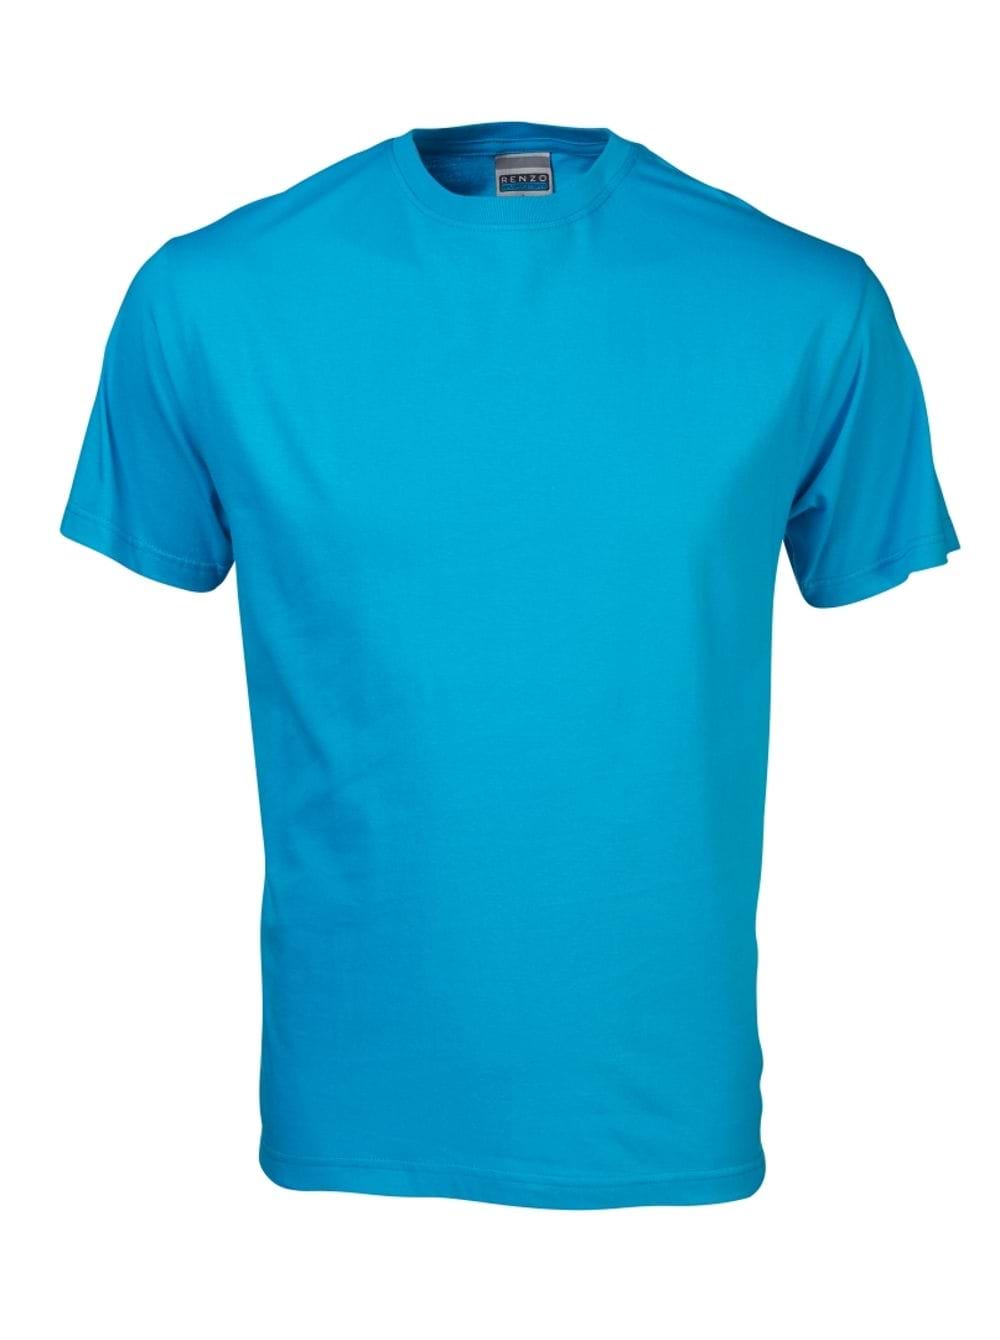 165G Crew Neck T-Shirt - Cyan Blue / S